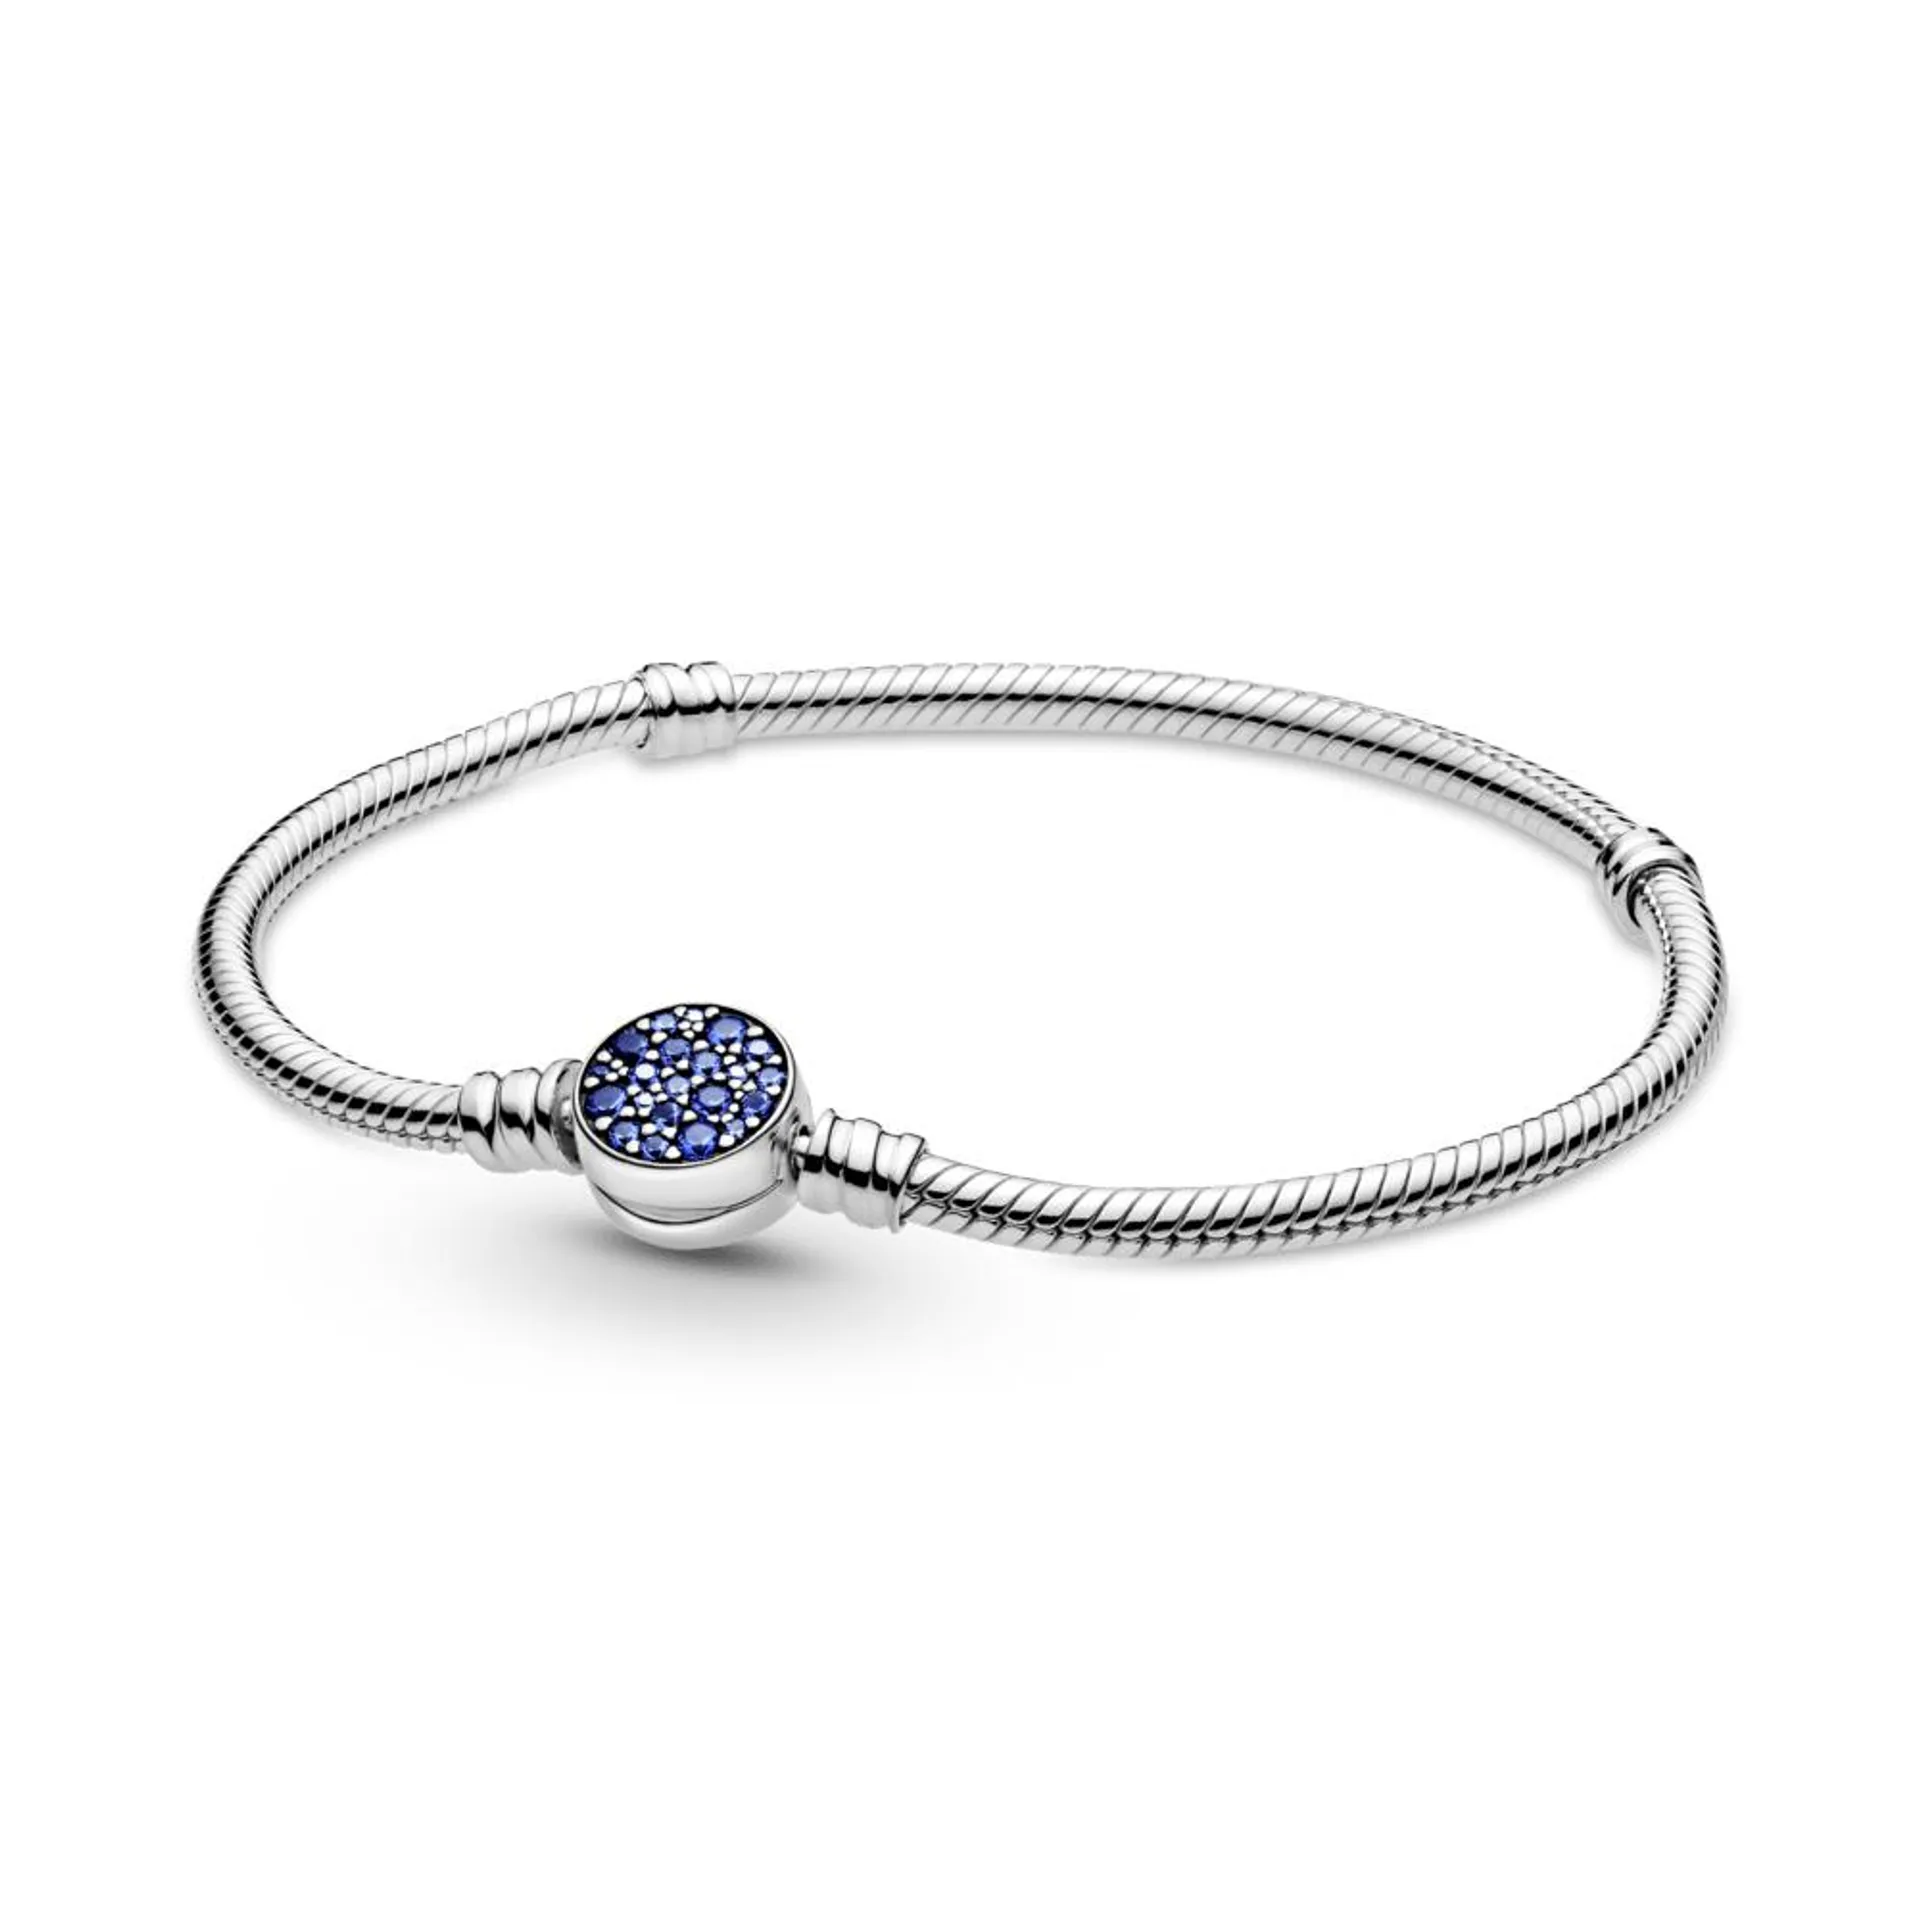 Brazalete cadena de serpiente Pandora Moments con broche de disco azul resplandeciente